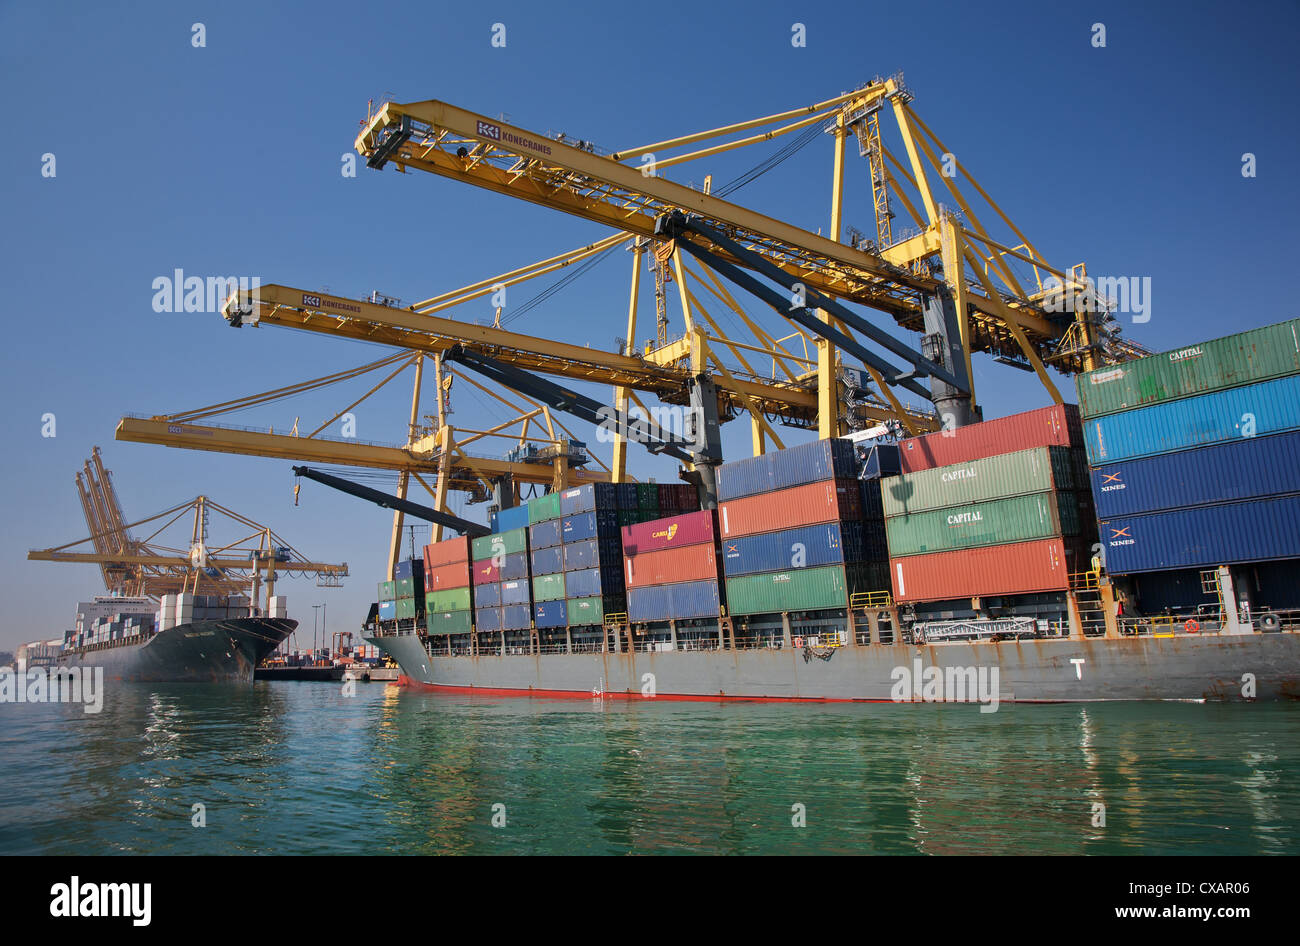 Puerto de contenedores, el puerto de Barcelona, Barcelona, Cataluña, España y Europa Foto de stock